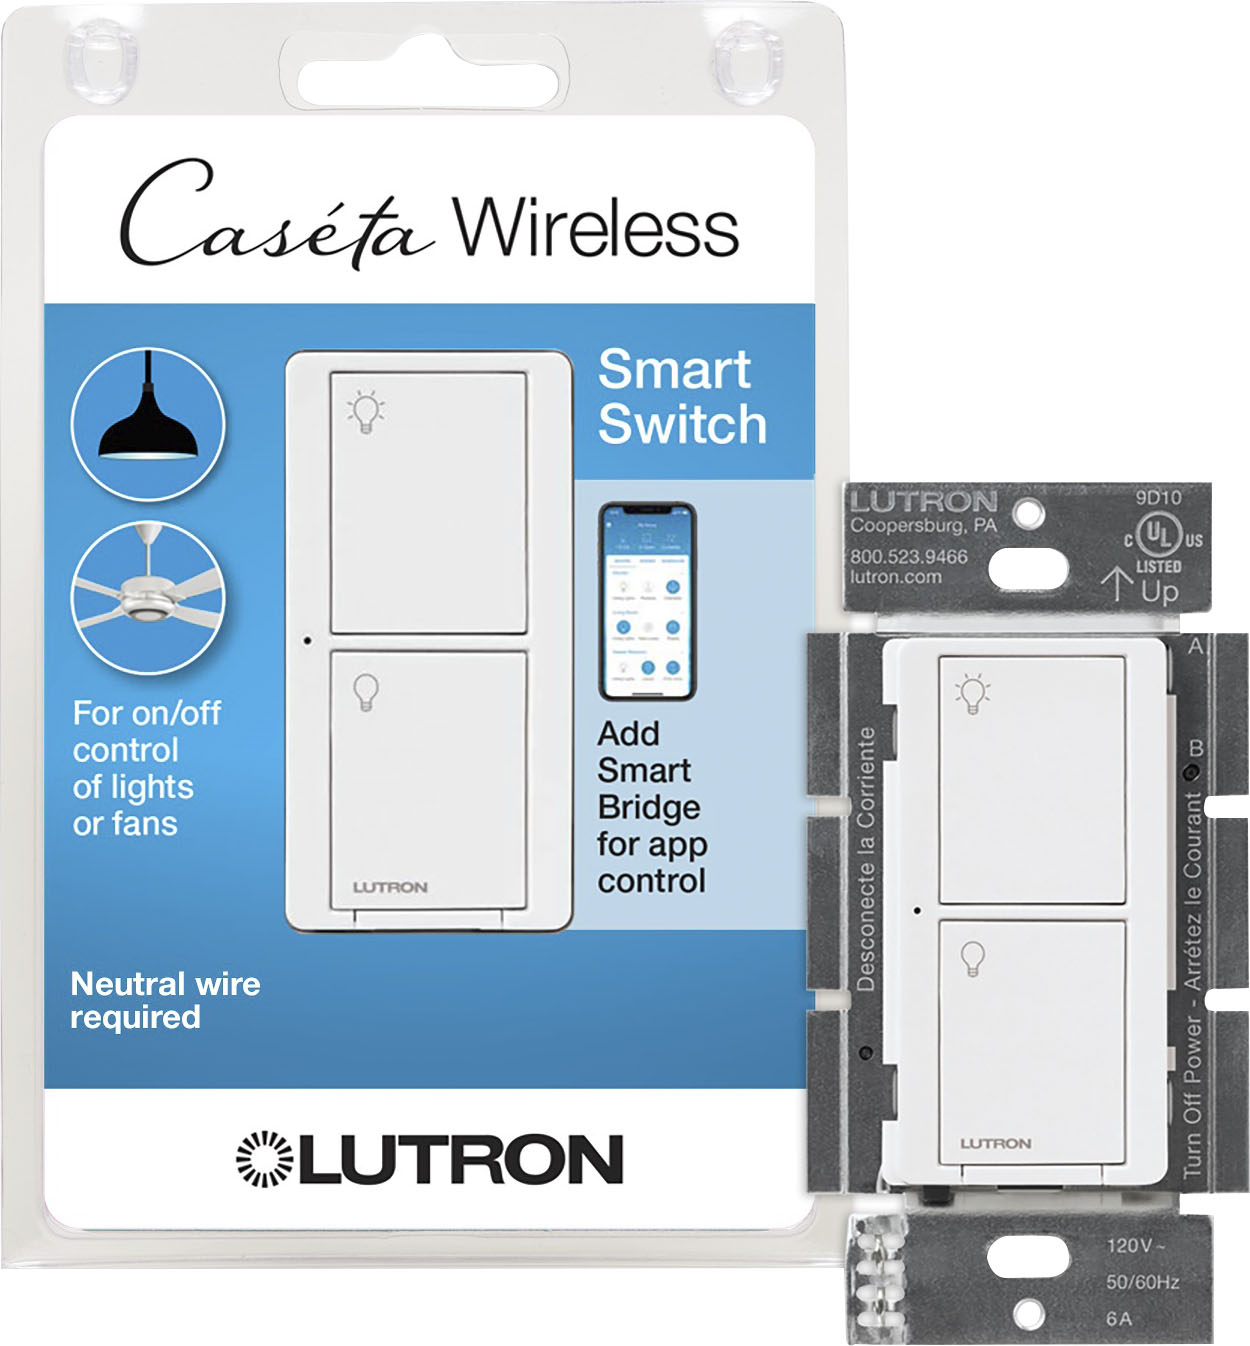 Caseta Multi-Location Neutral Wire Smart Switch Lutron White